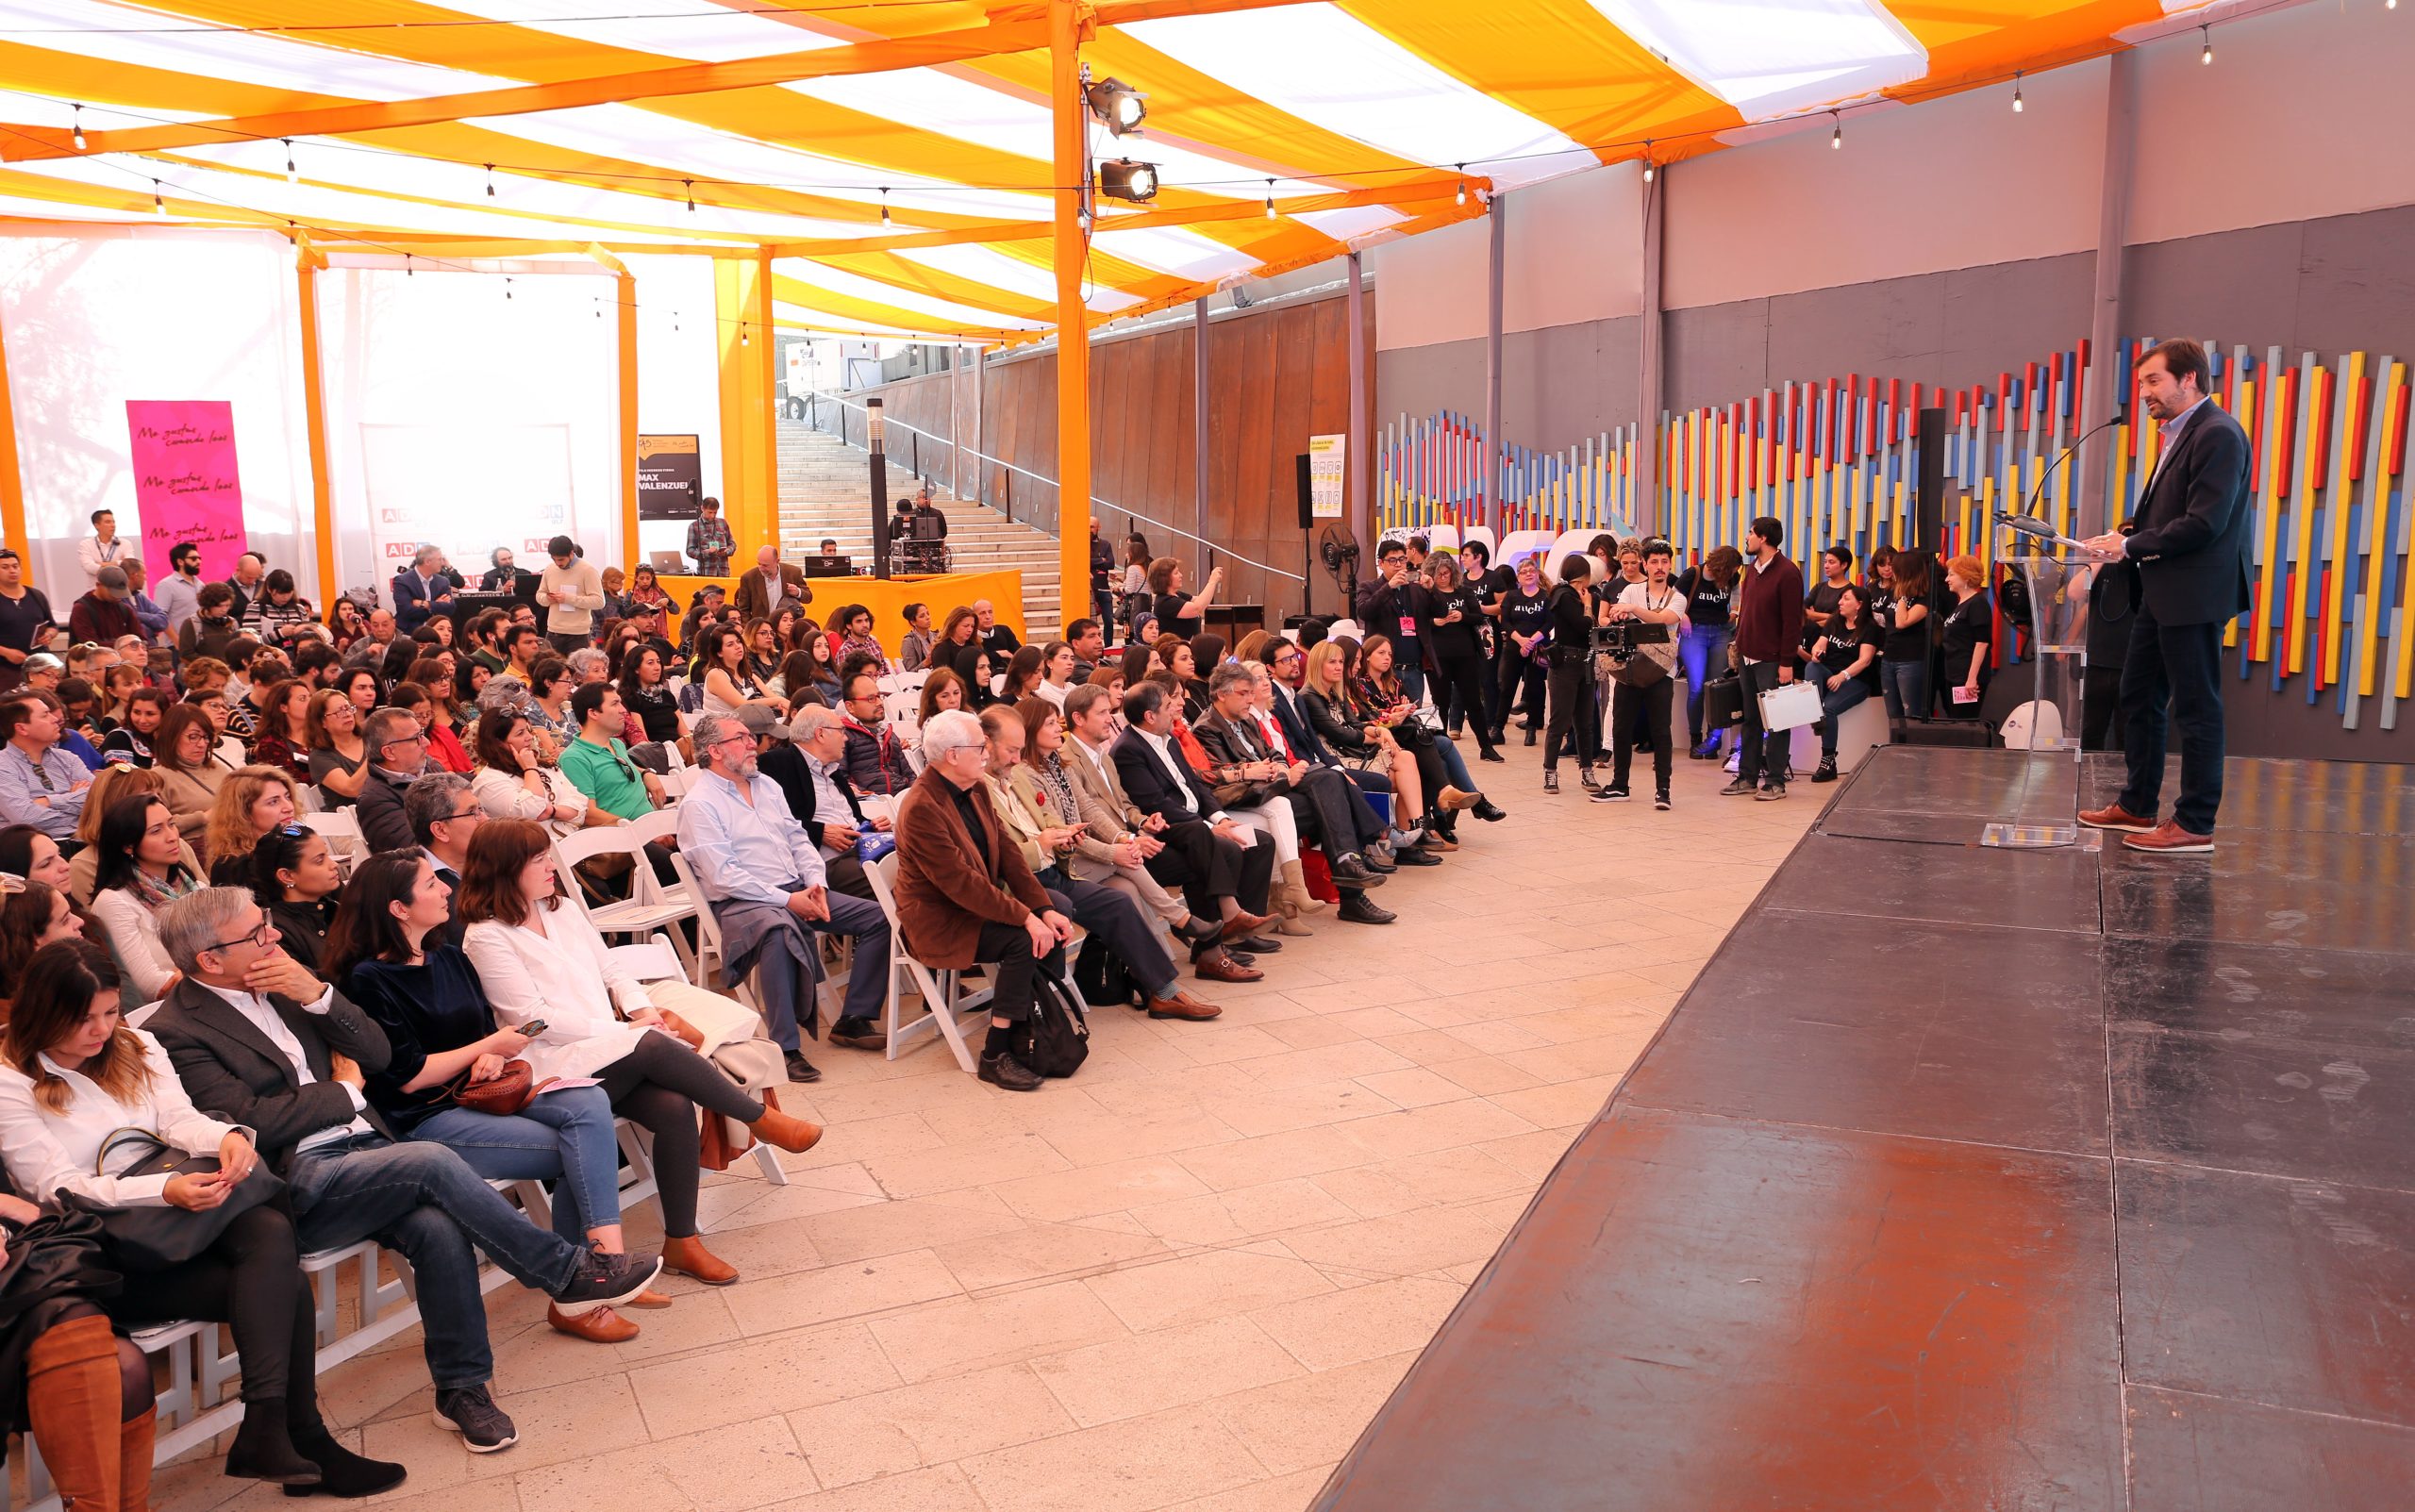 Festival de Autores 2022 contará con la presencia de Hernán Rivera Letelier, Leonardo Padura y cerca de cien actividades abiertas al público